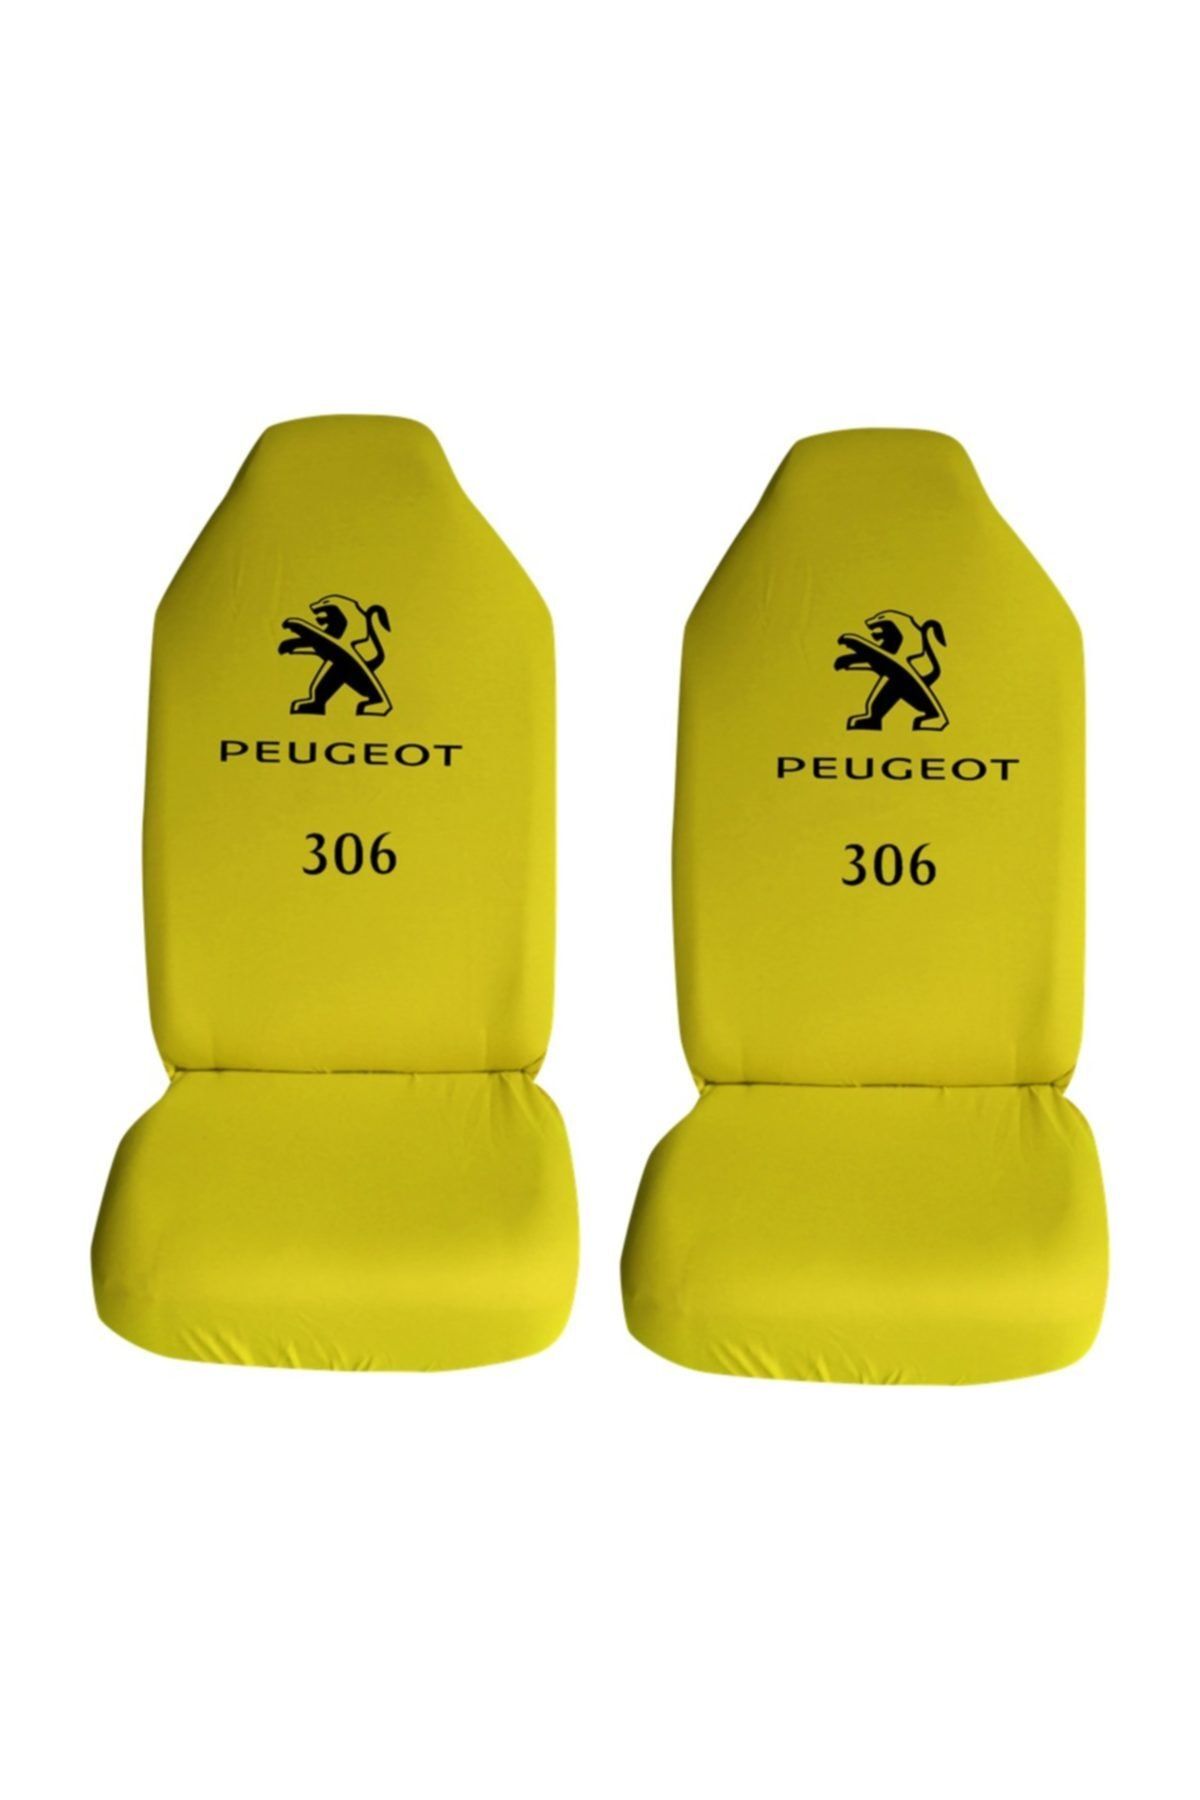 Modatools Peugeot 306 Uyumlu Özel Araba Oto Koltuk Kılıfı Ön Koltuklar Sarı Penye